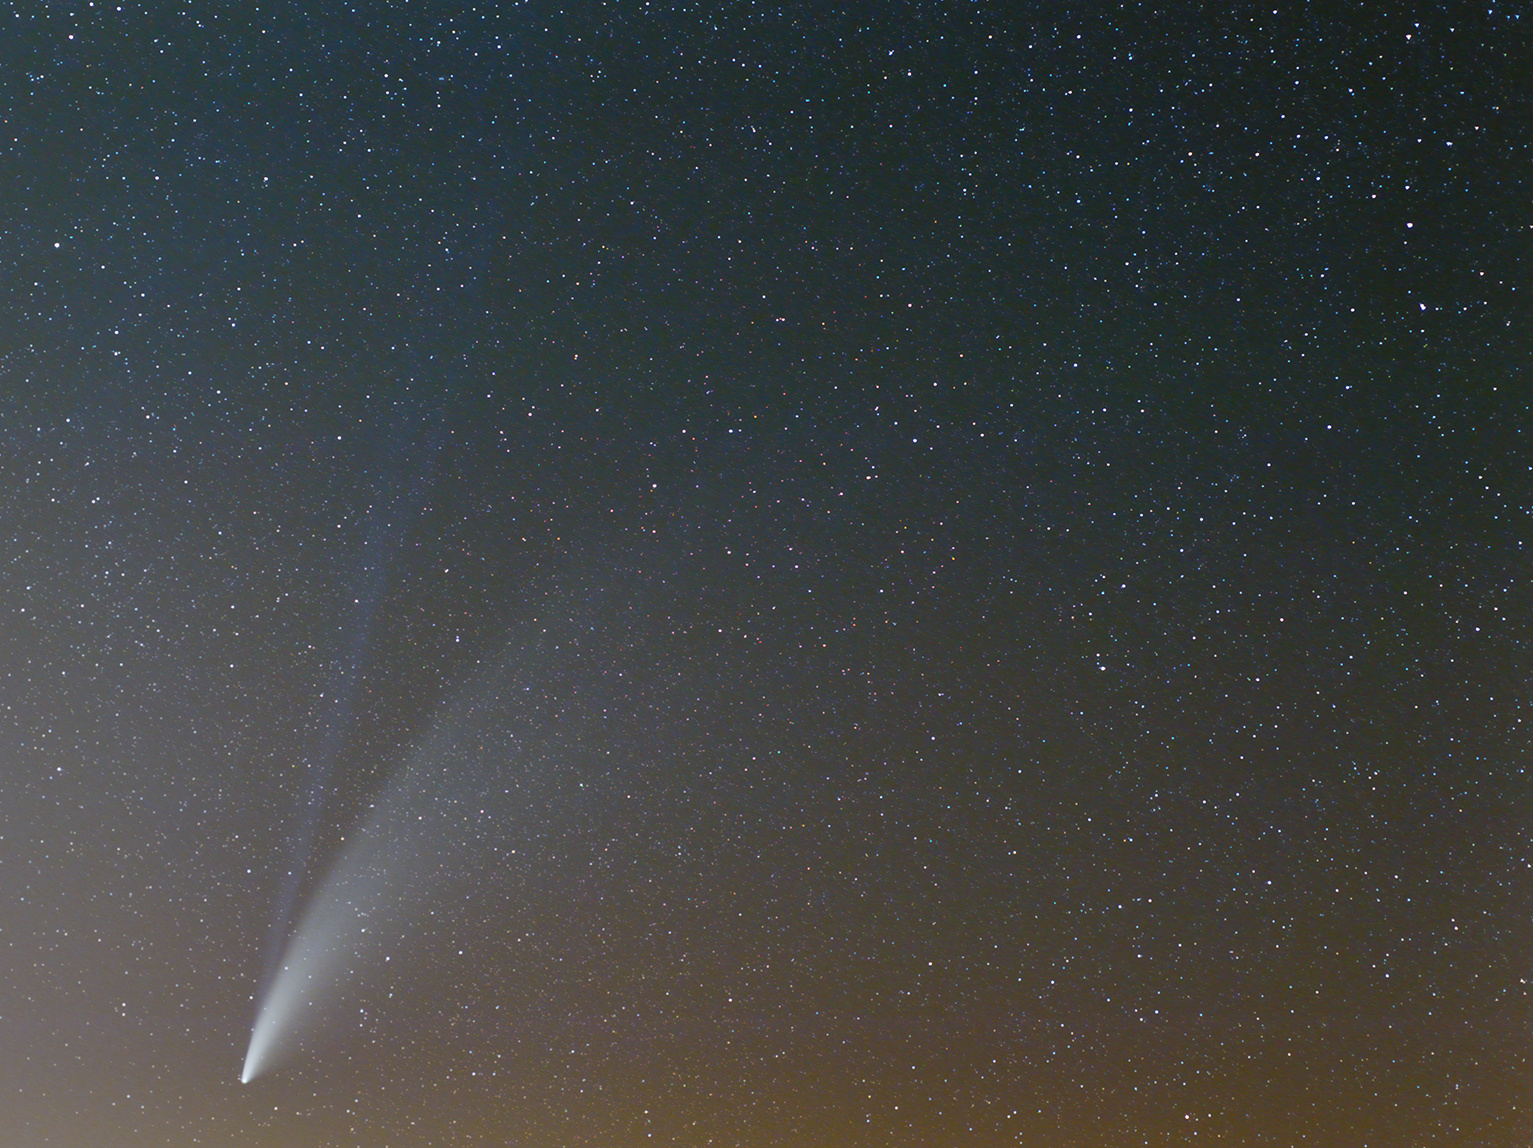 Comet_Neowise_2020-07-15_00-40.jpg.bb21823a845a3e25eee60360d7a4c7c7.jpg